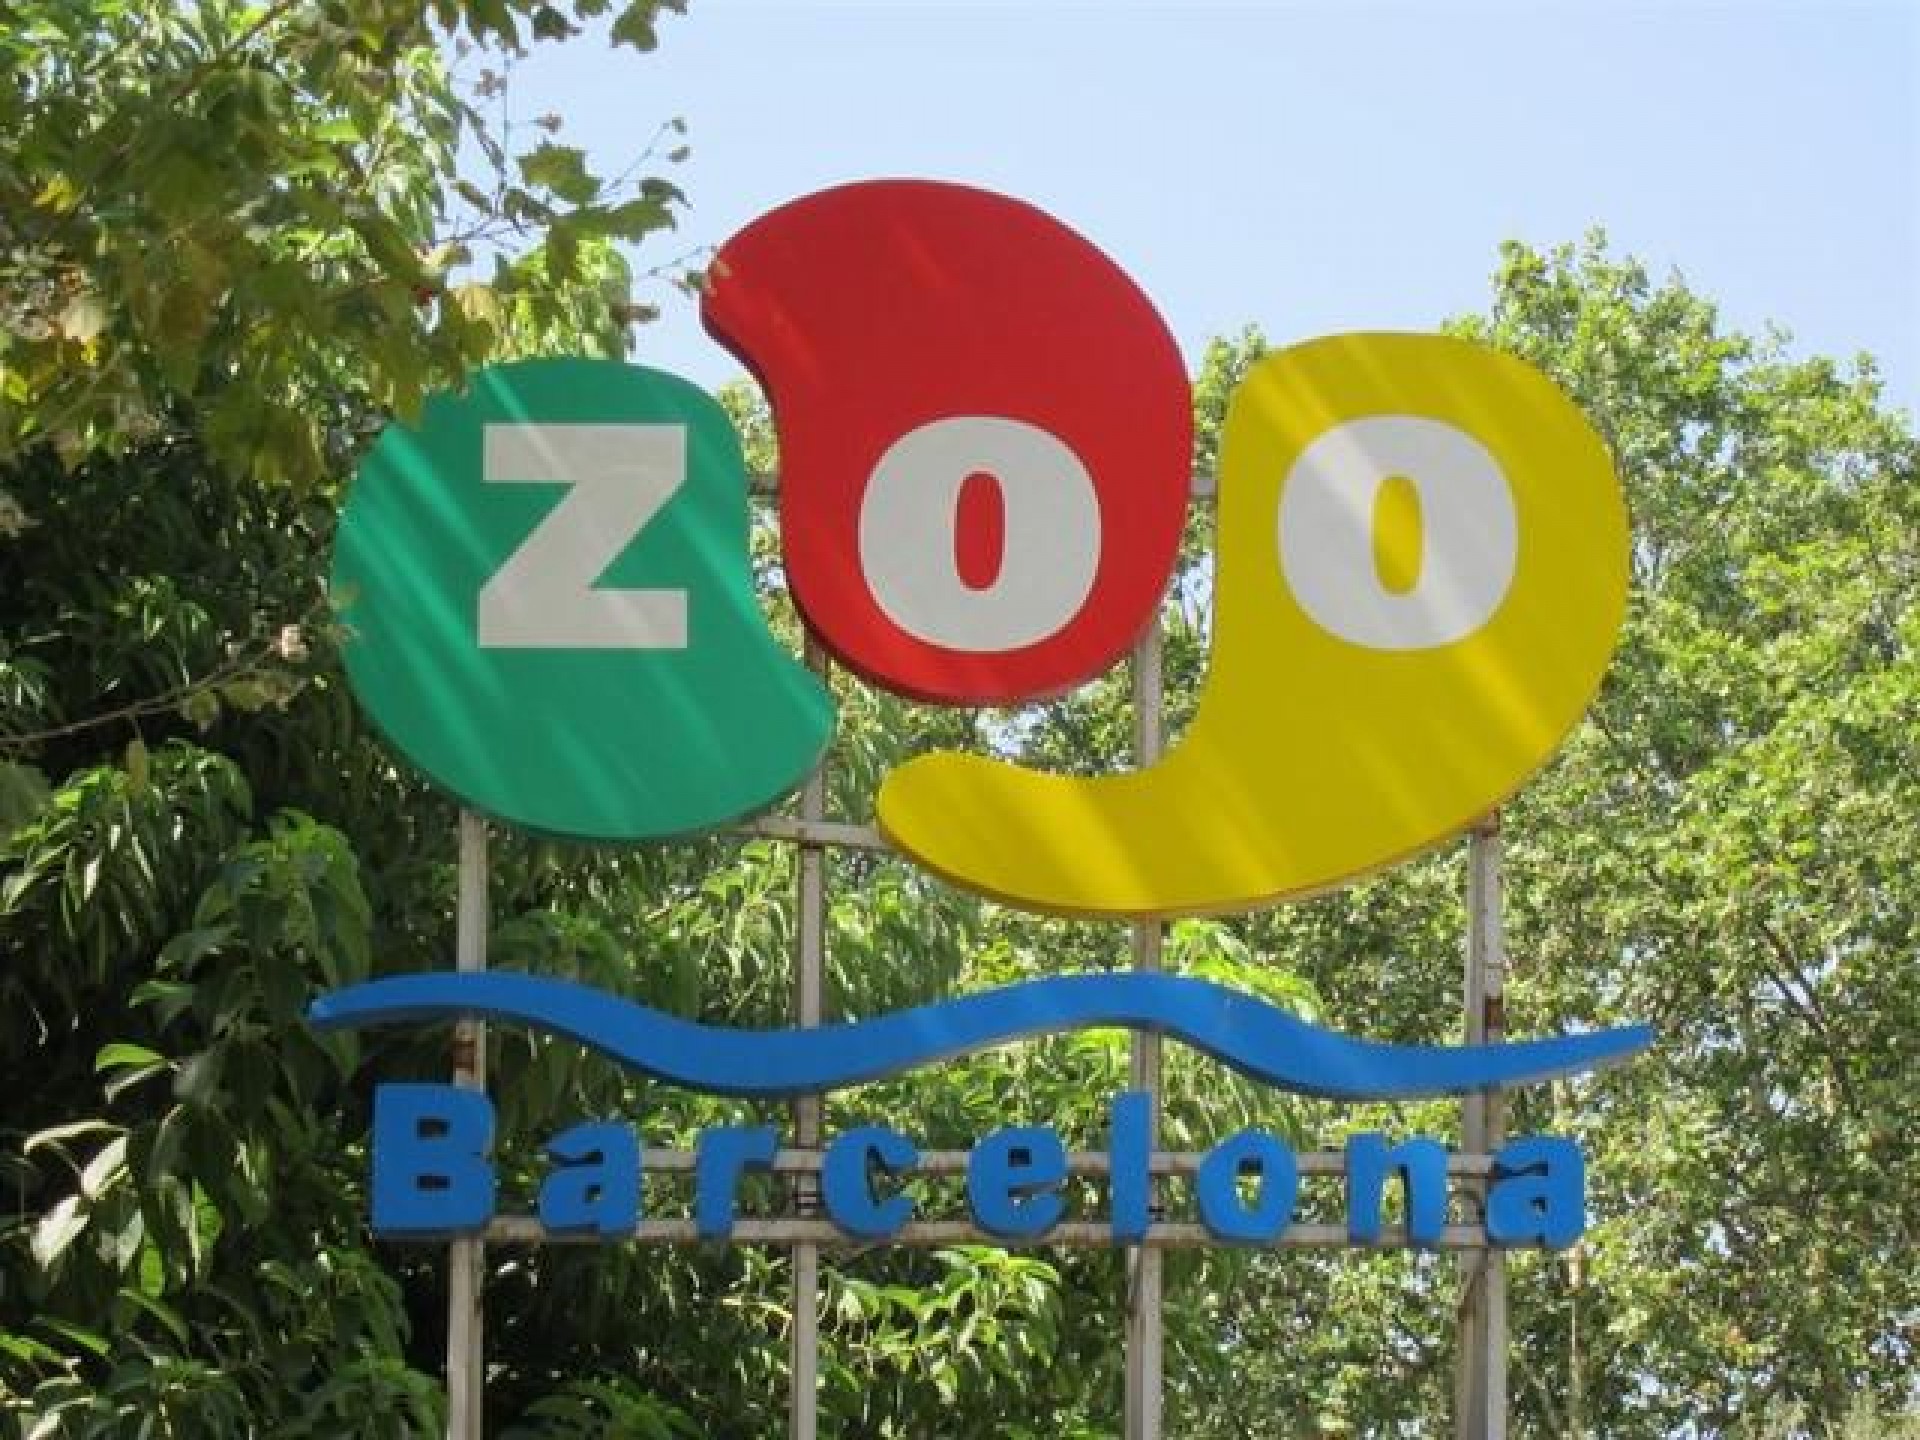 Zoo de Bcn